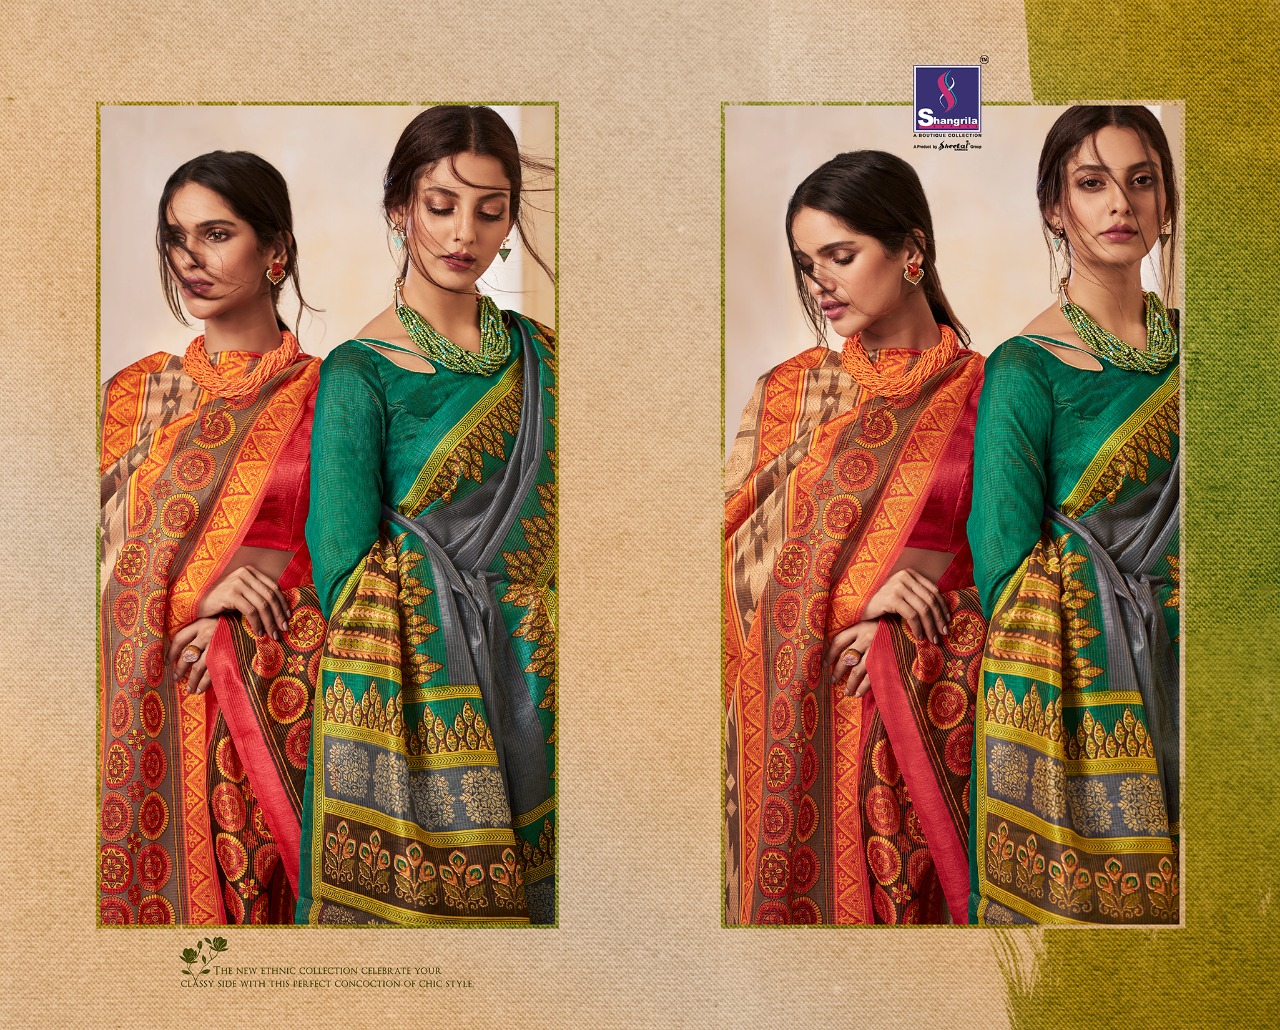 Shangrila launch asoPalav zari designer printed sarees